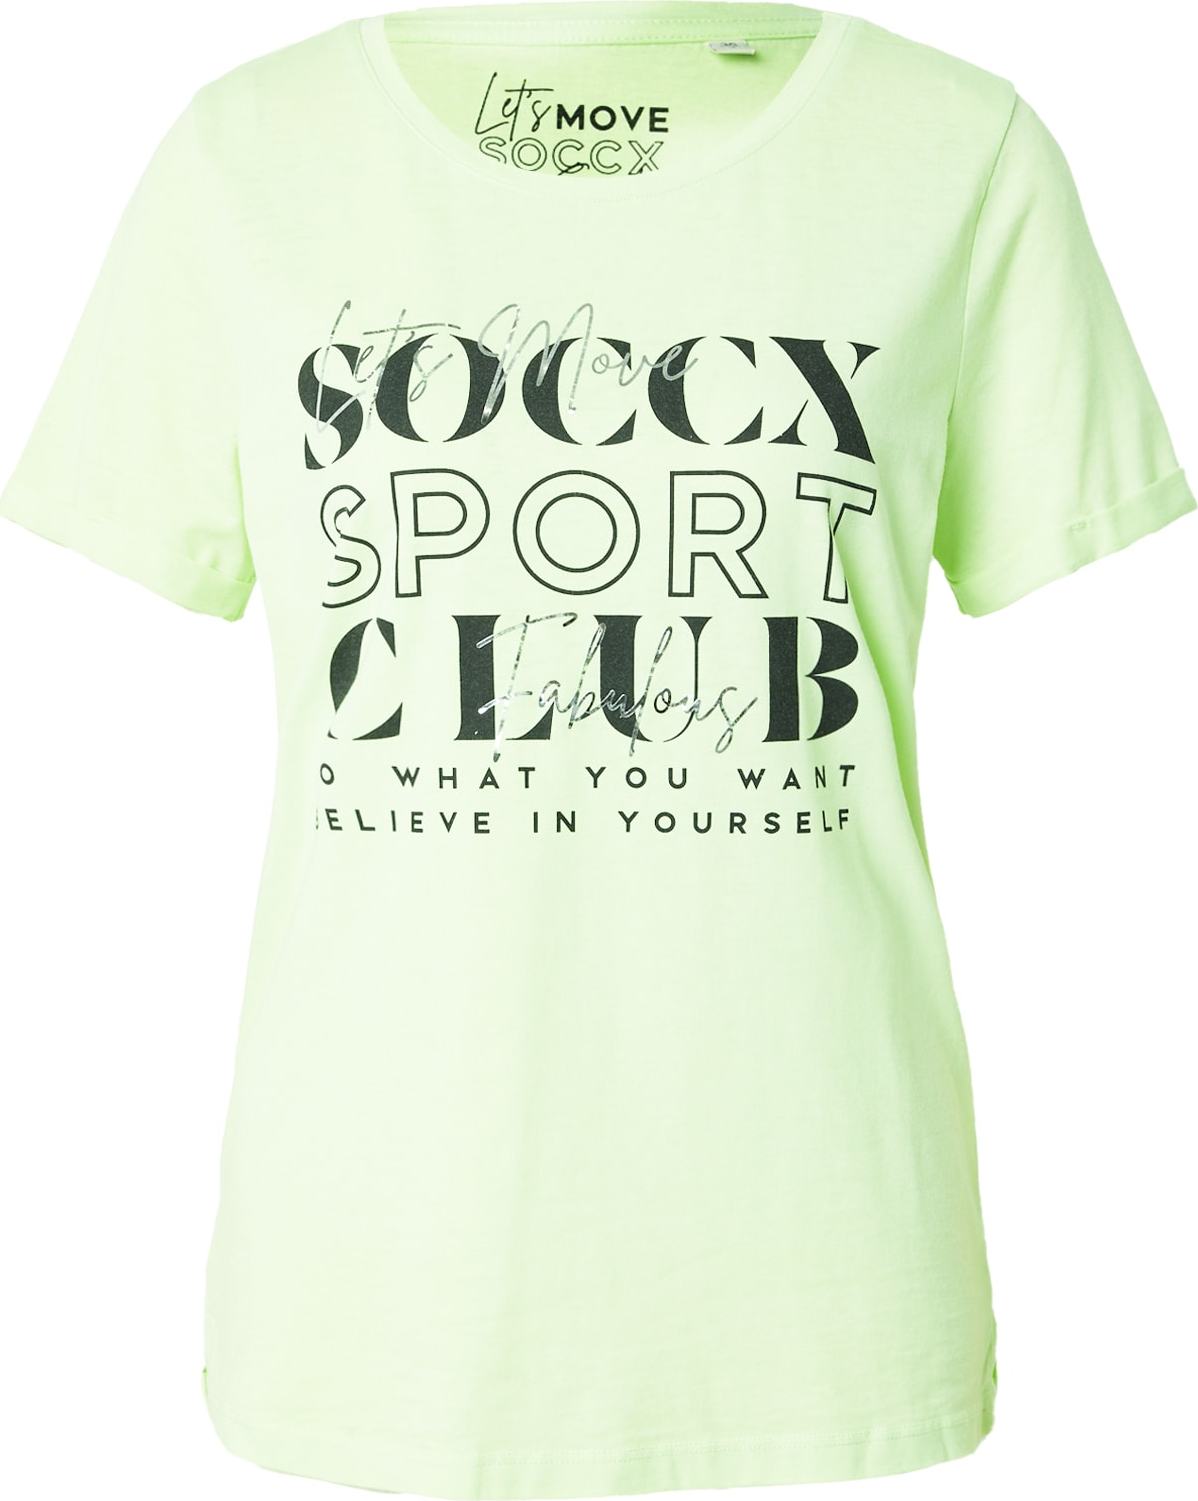 Tričko Soccx světle zelená / černá / bílá